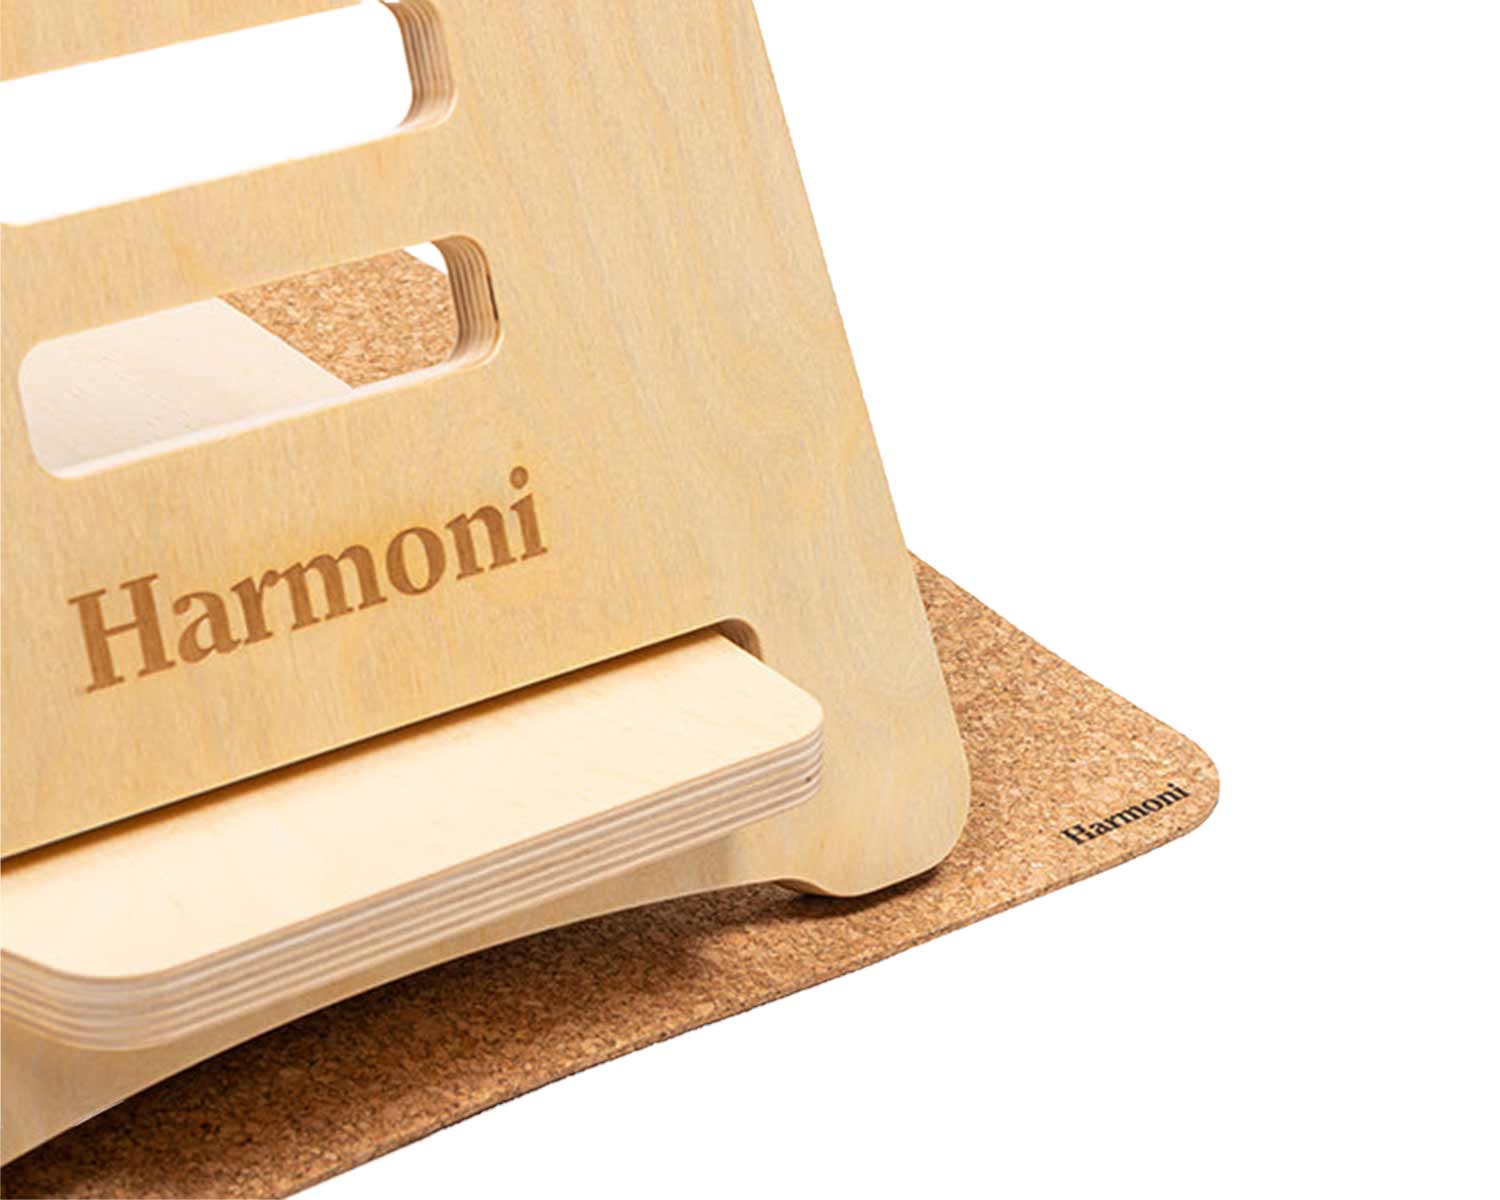 cork desk mat for the Harmoni desk